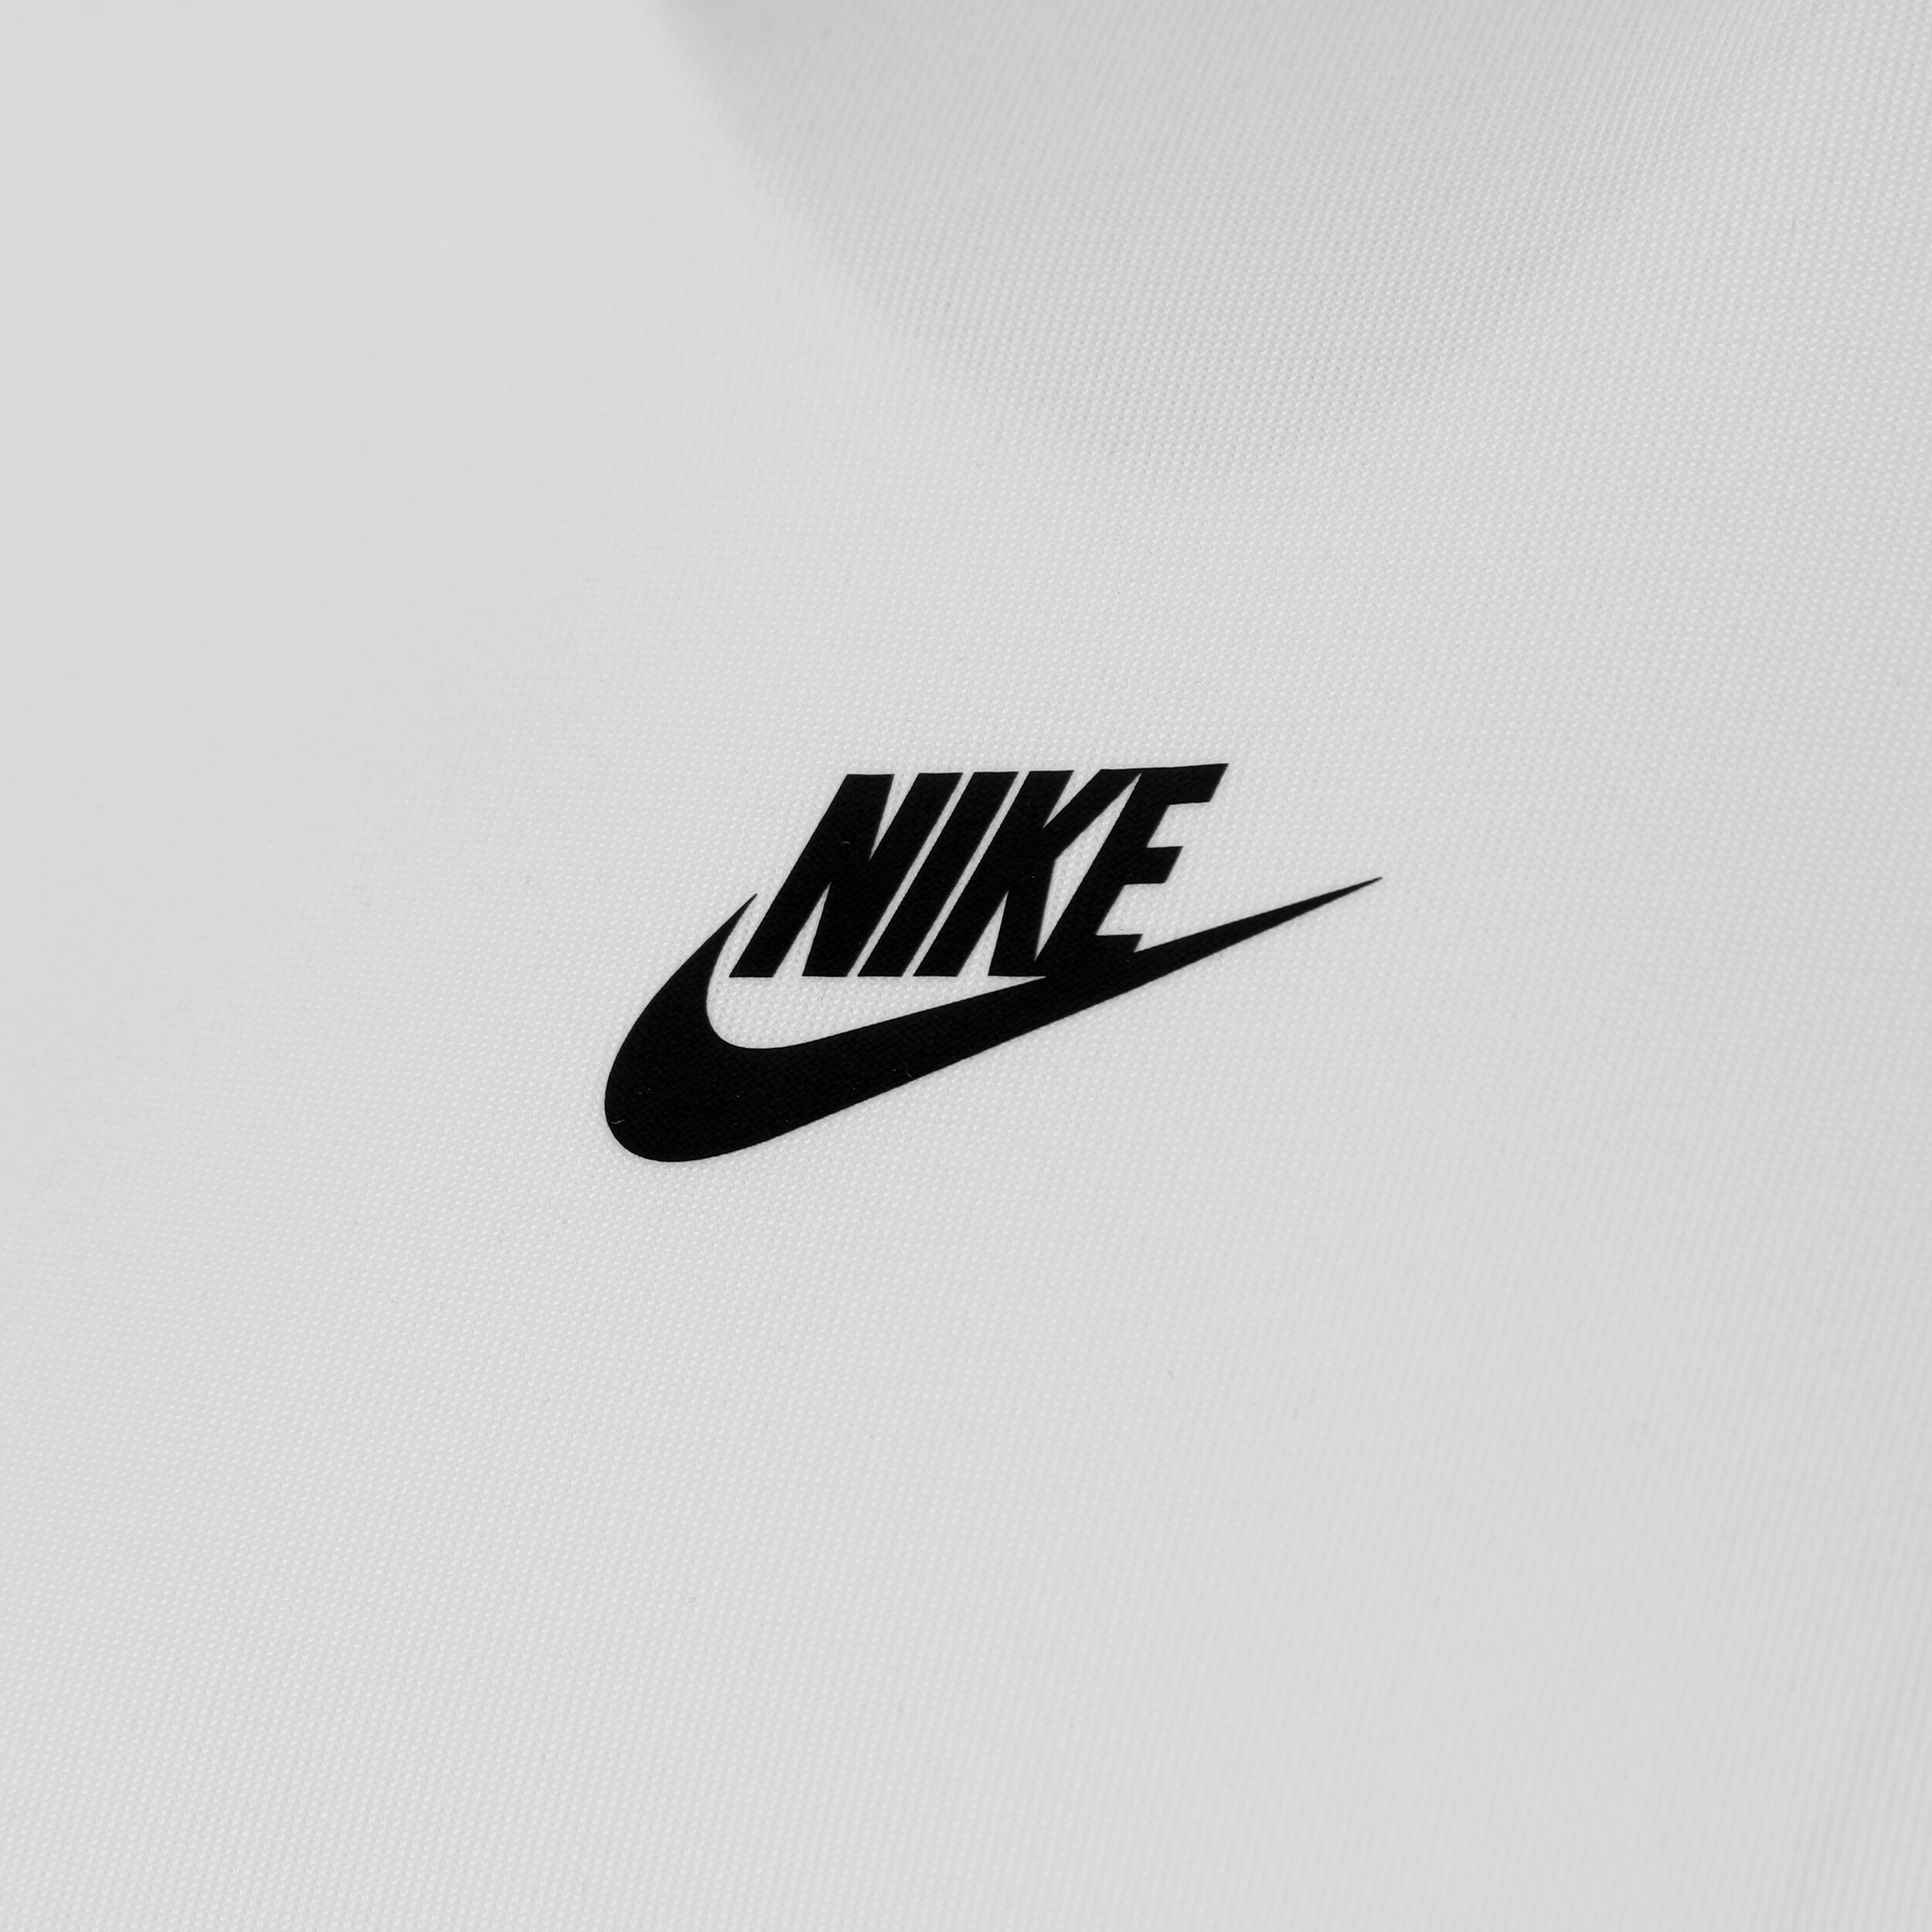 страница 2 | Логотип Nike Изображения – скачать бесплатно на Freepik